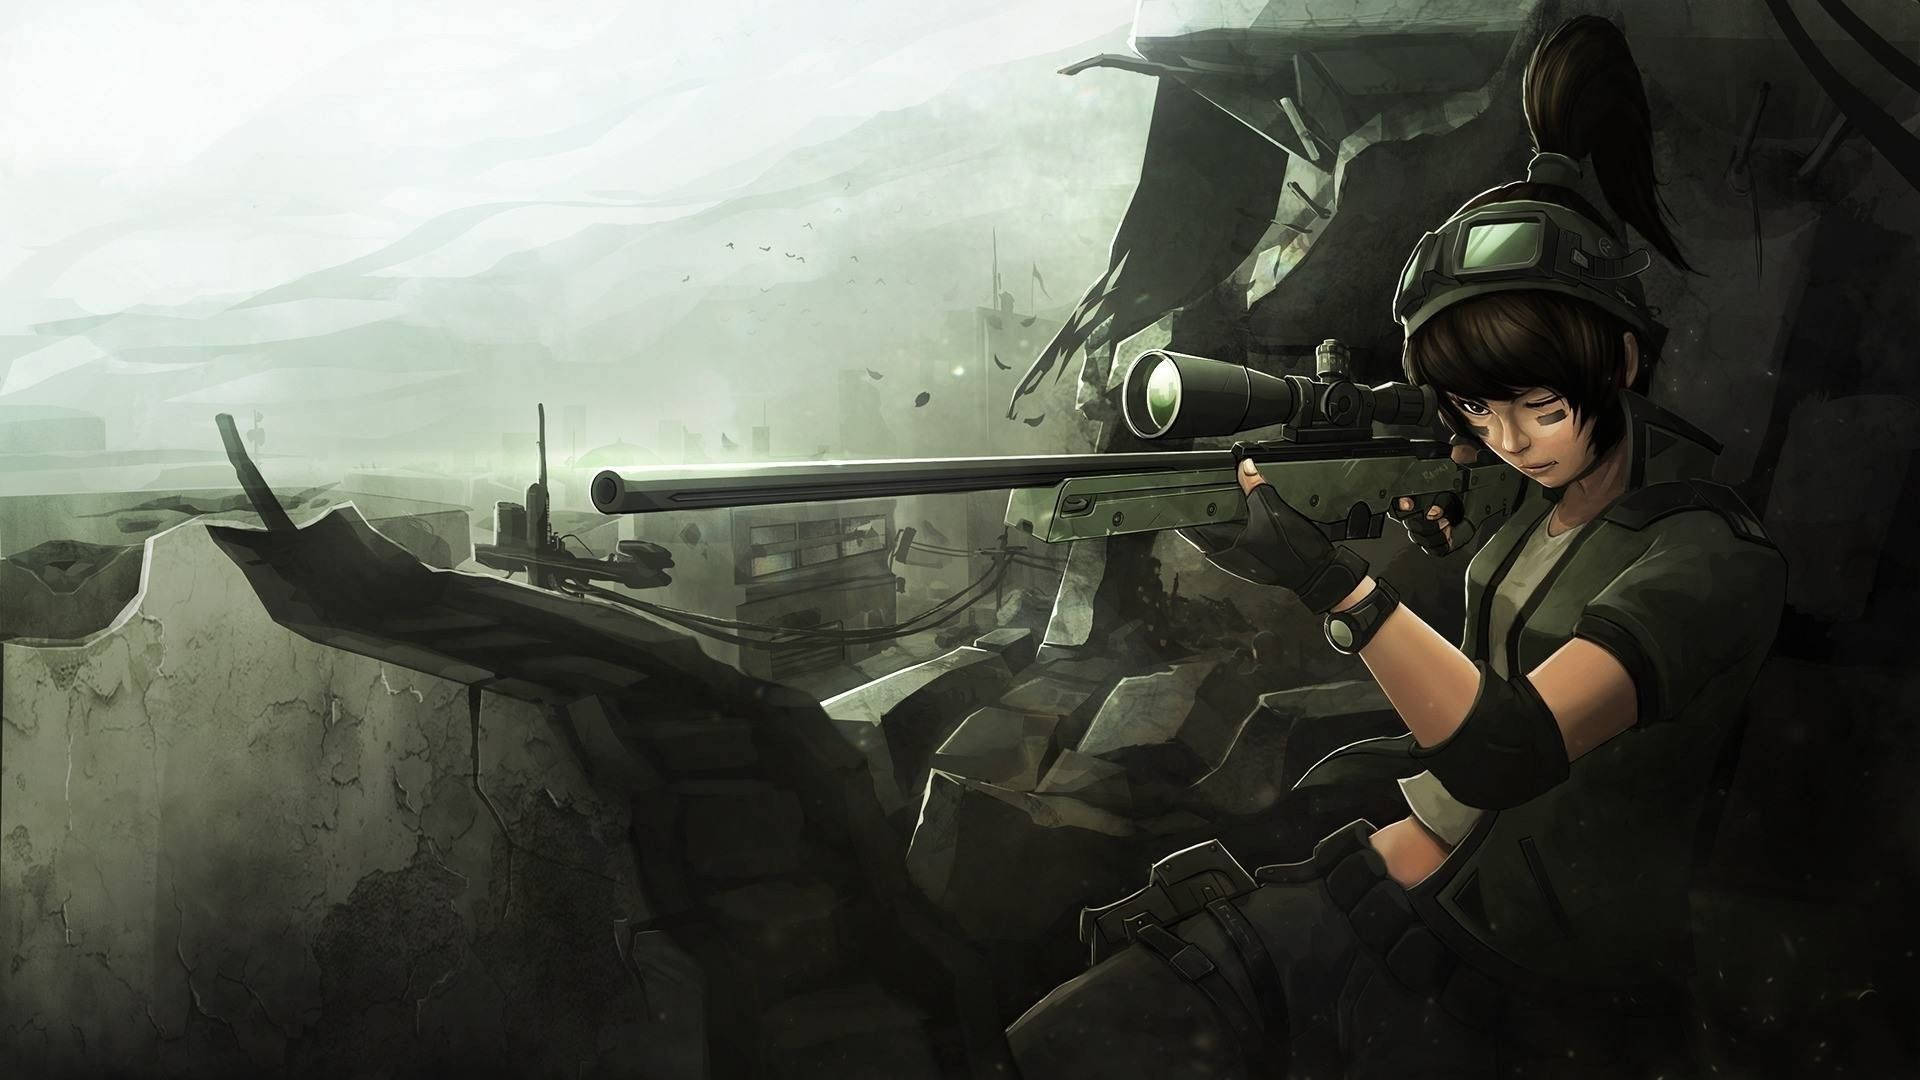 Anime Sniper Girl